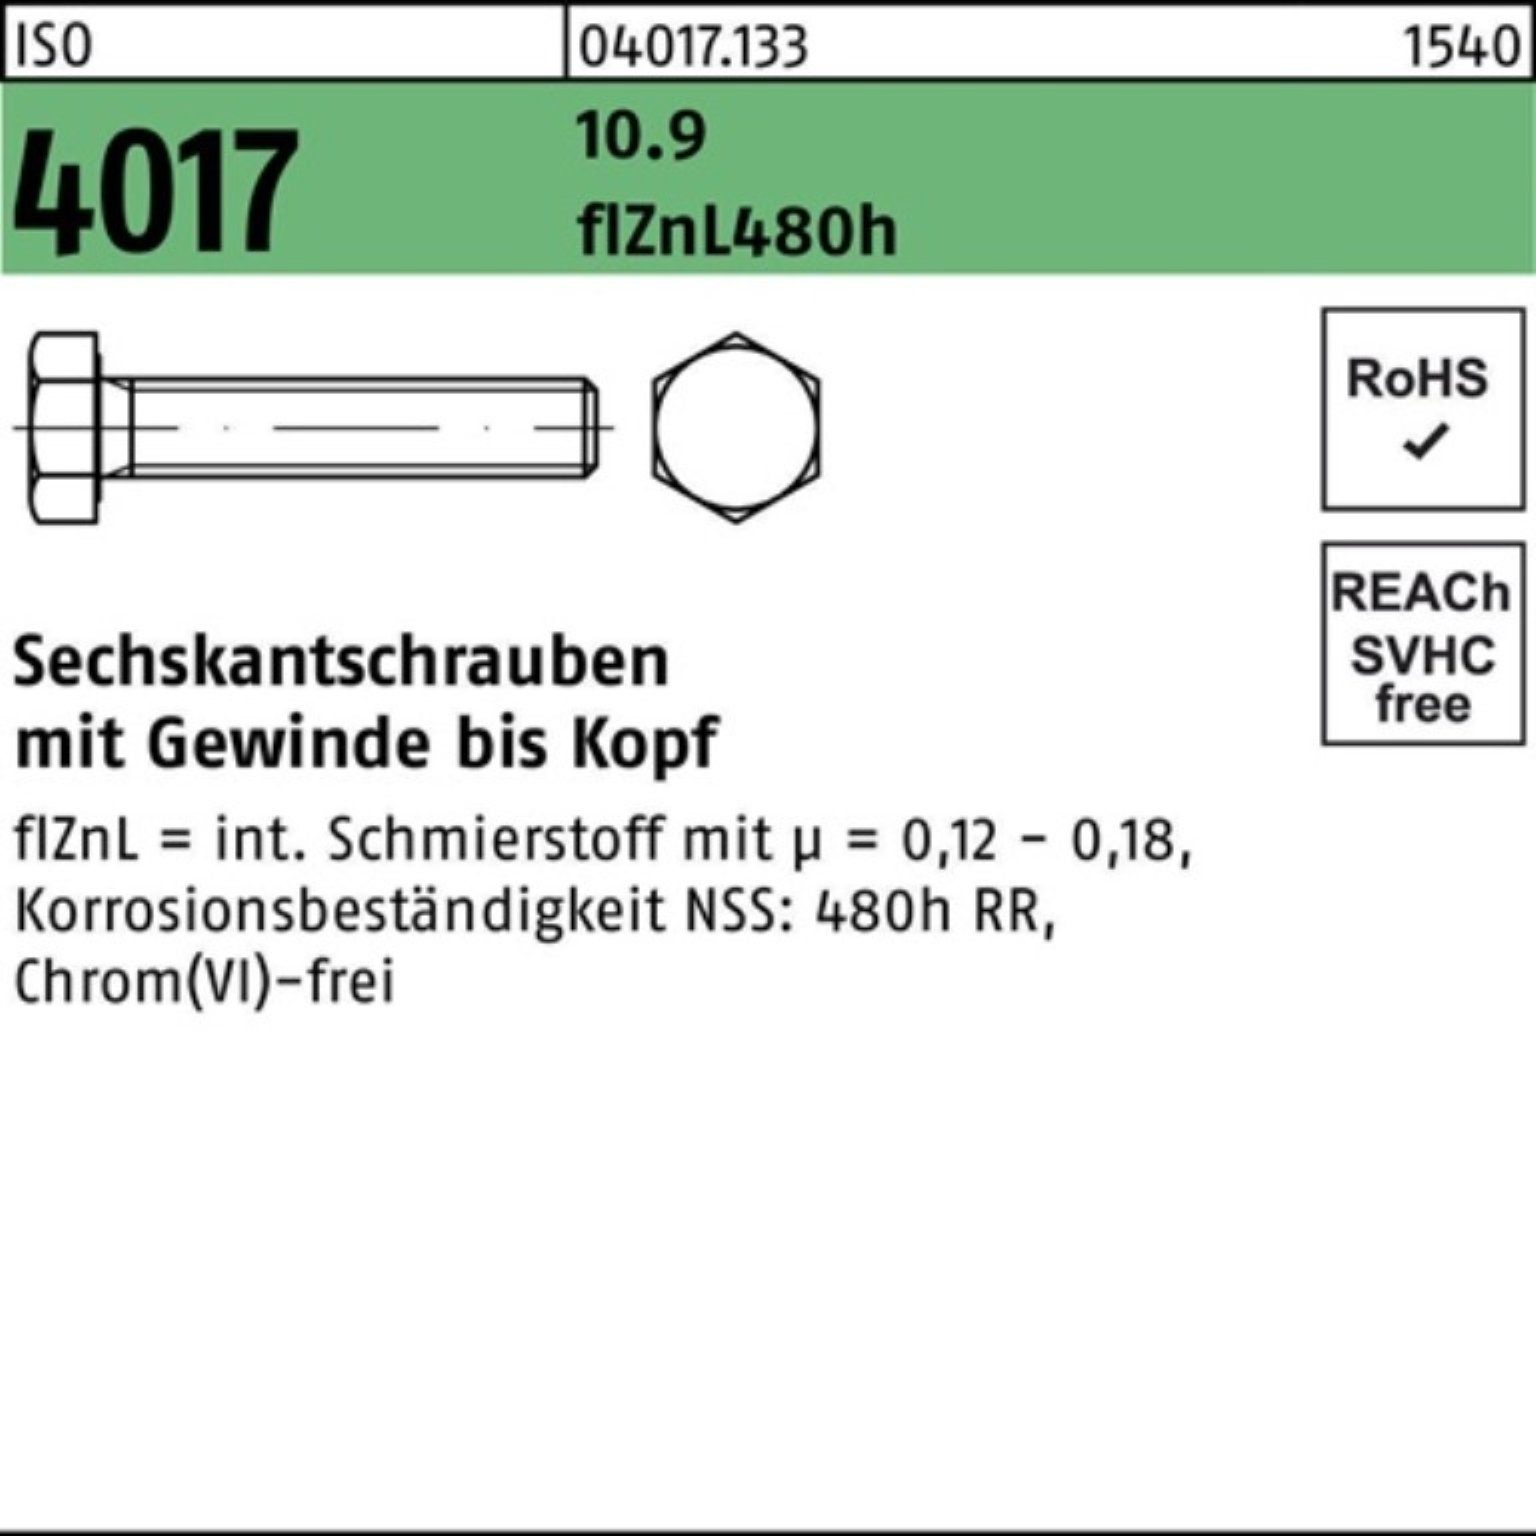 VG Sechskantschraube 10.9 Bufab Pack 4017 M20x zinklamellenb. 45 2 100er Sechskantschraube ISO